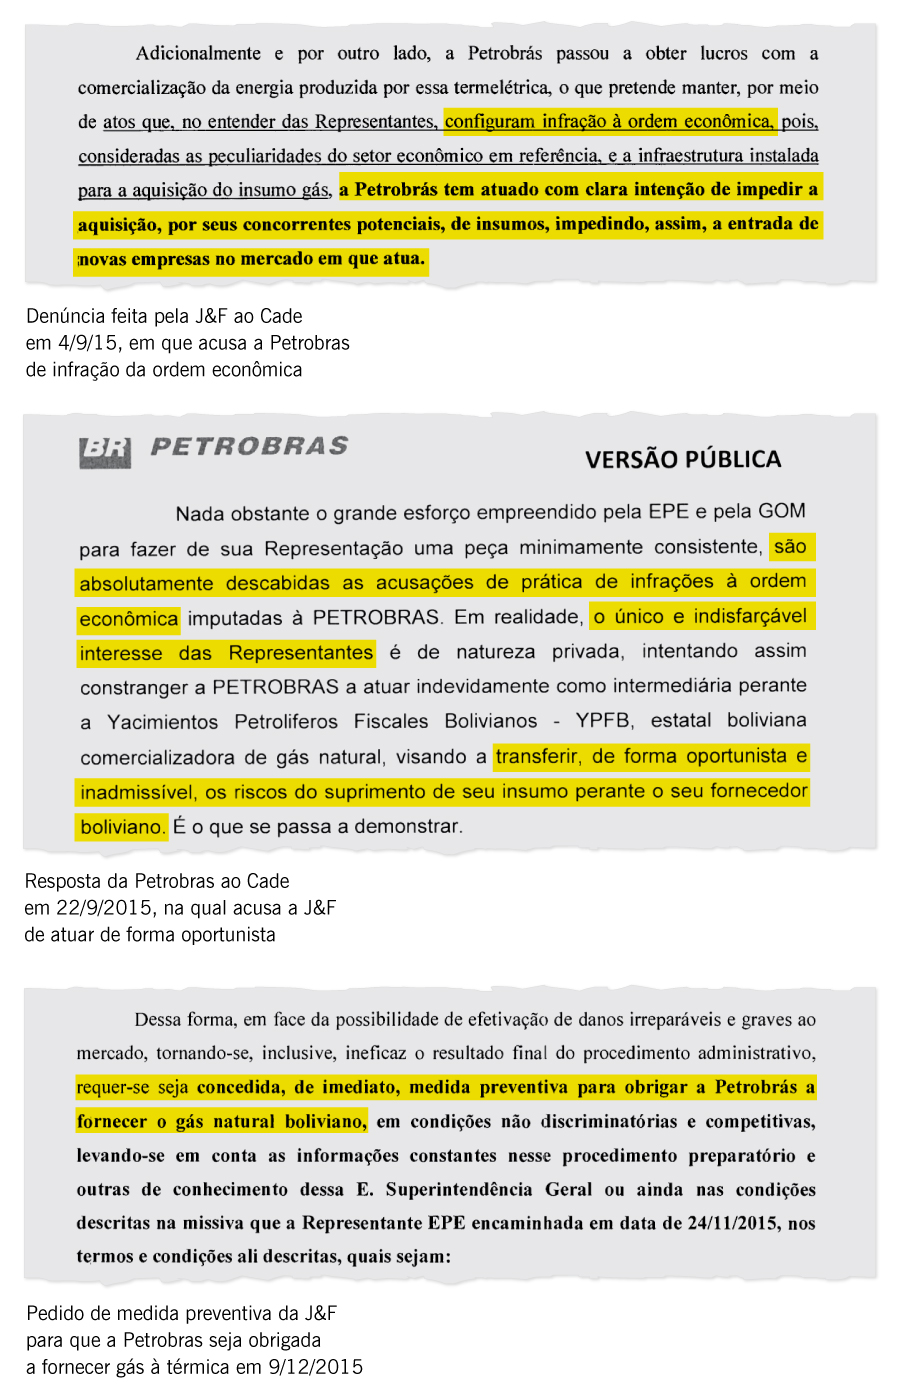 O Globo - 20/12/2015 - Os documentos enviados ao Cade pelas empresas